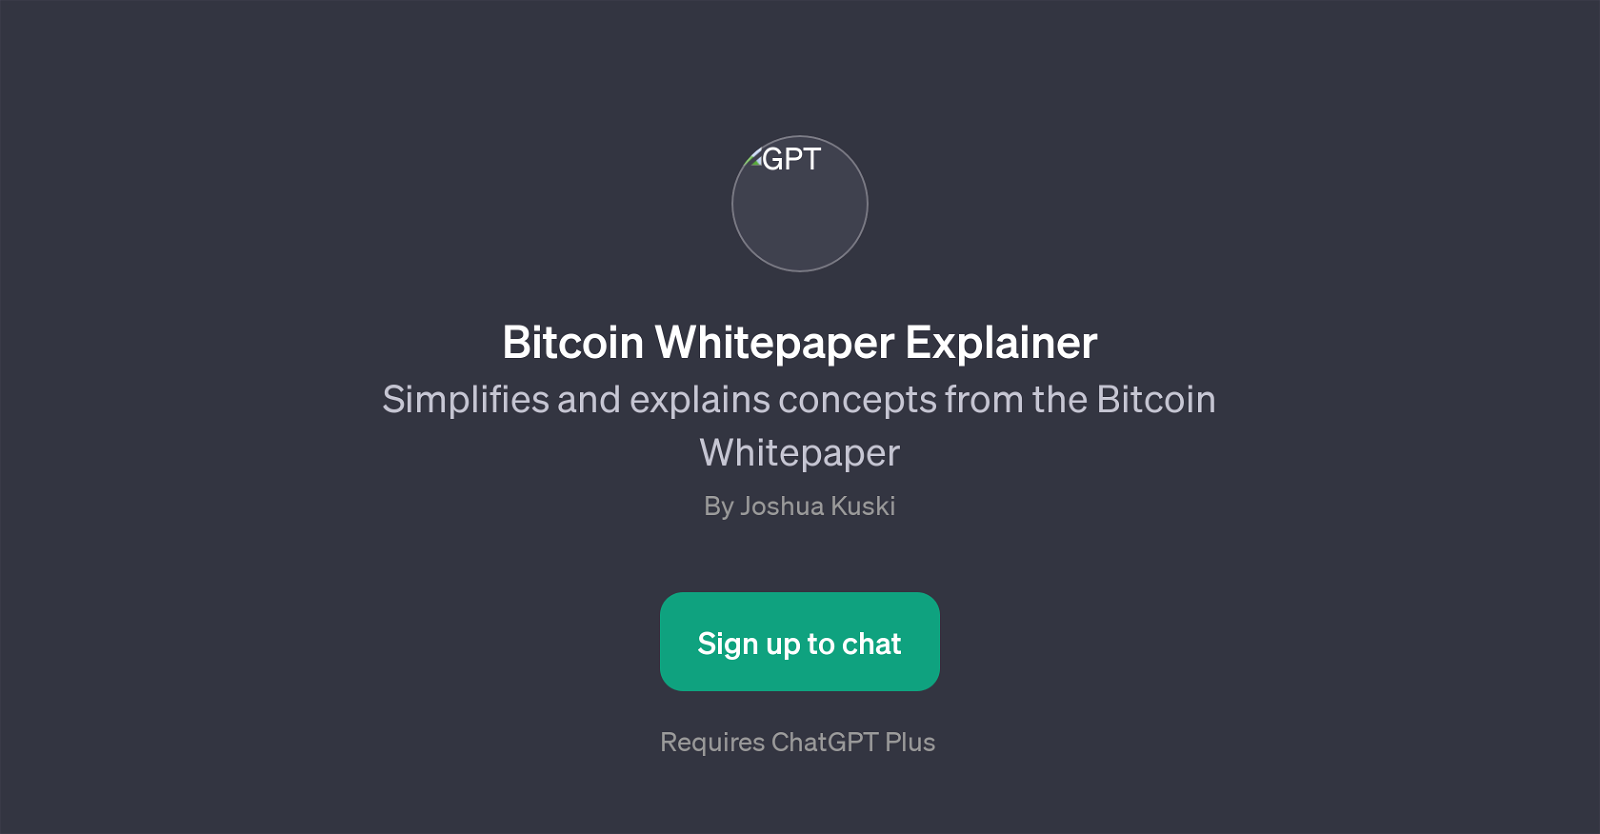 Bitcoin Whitepaper Explainer website